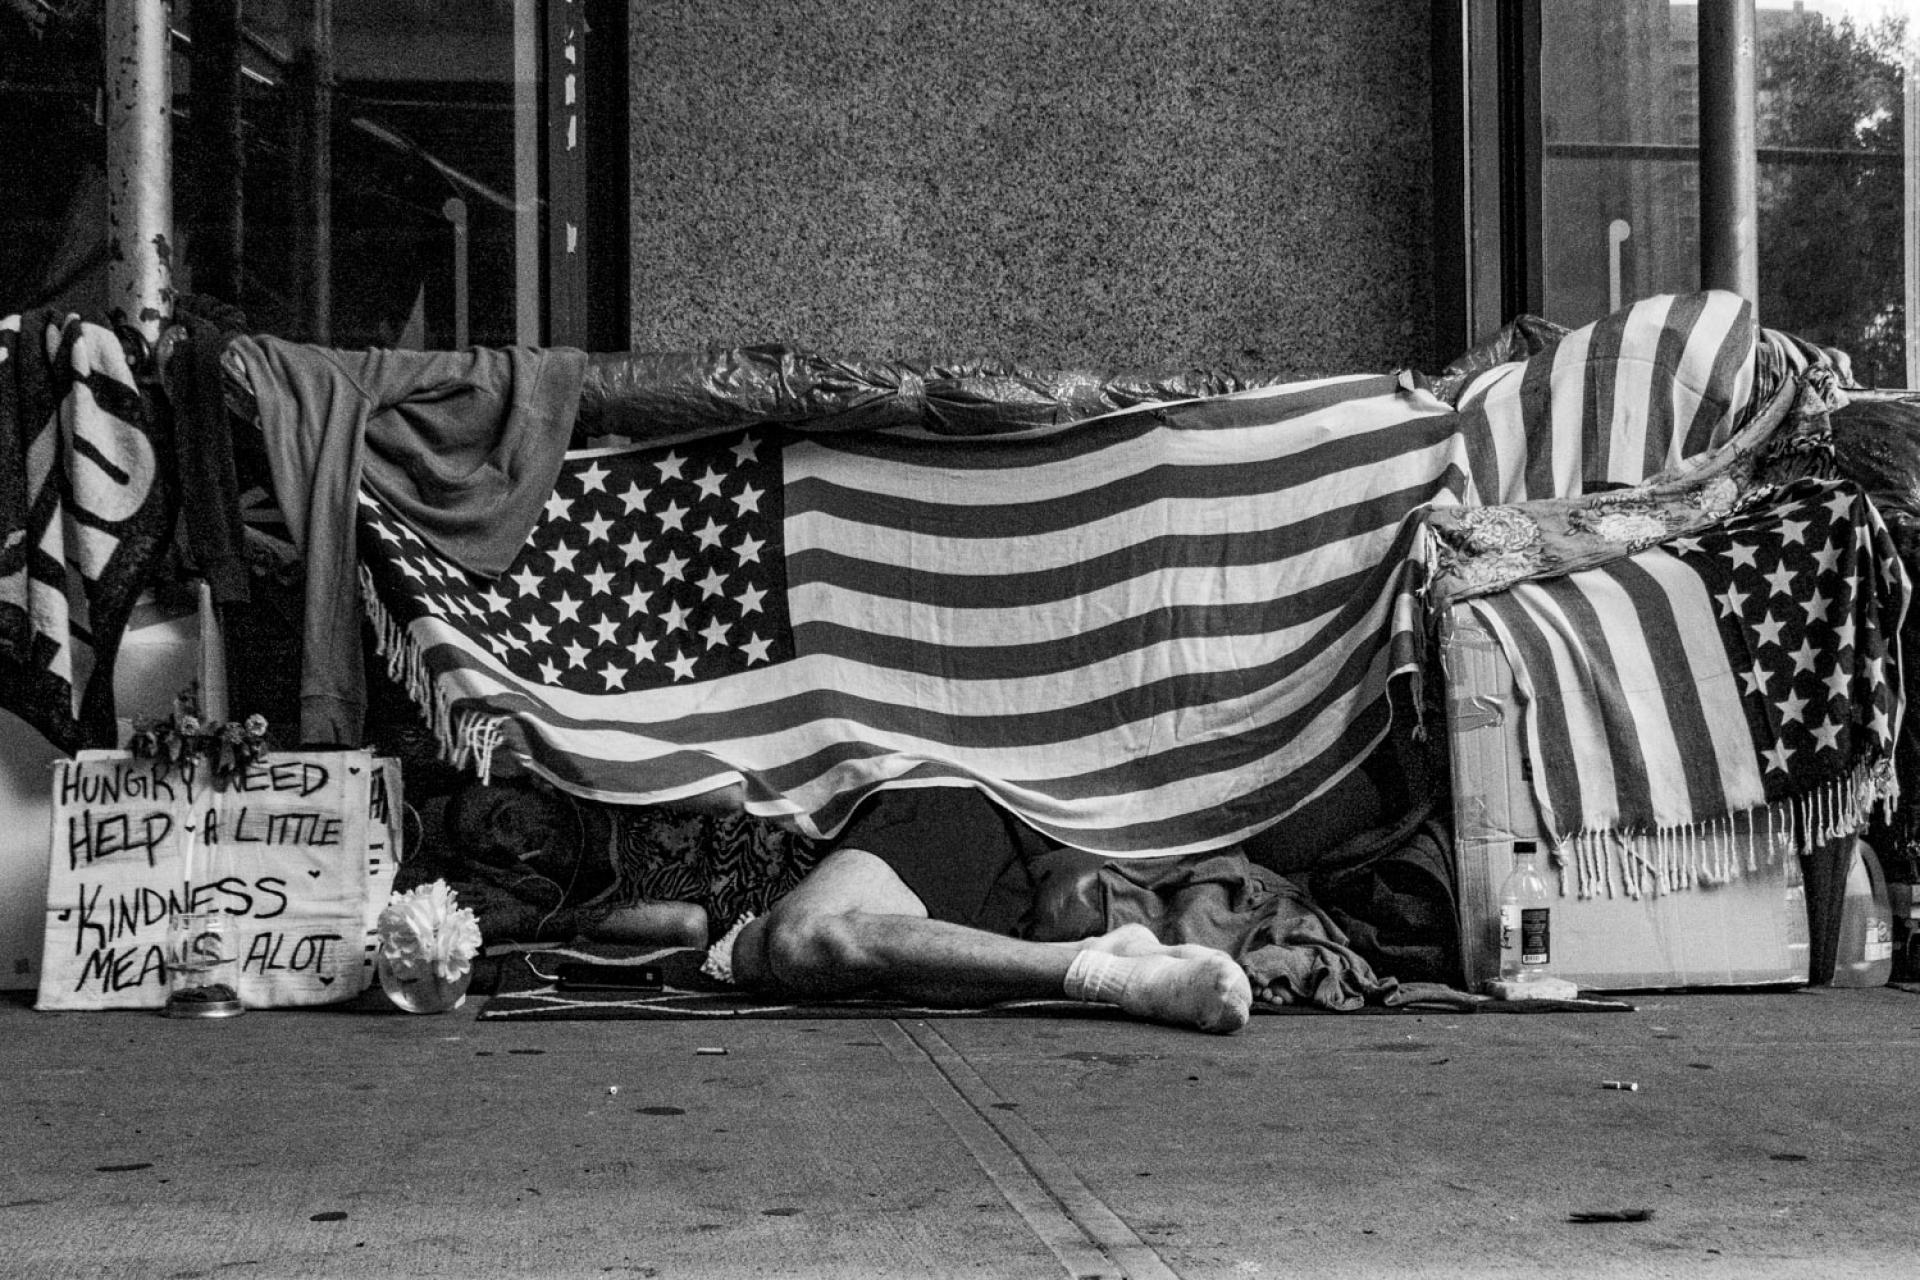 New York Photography Awards Winner - Homeless in America